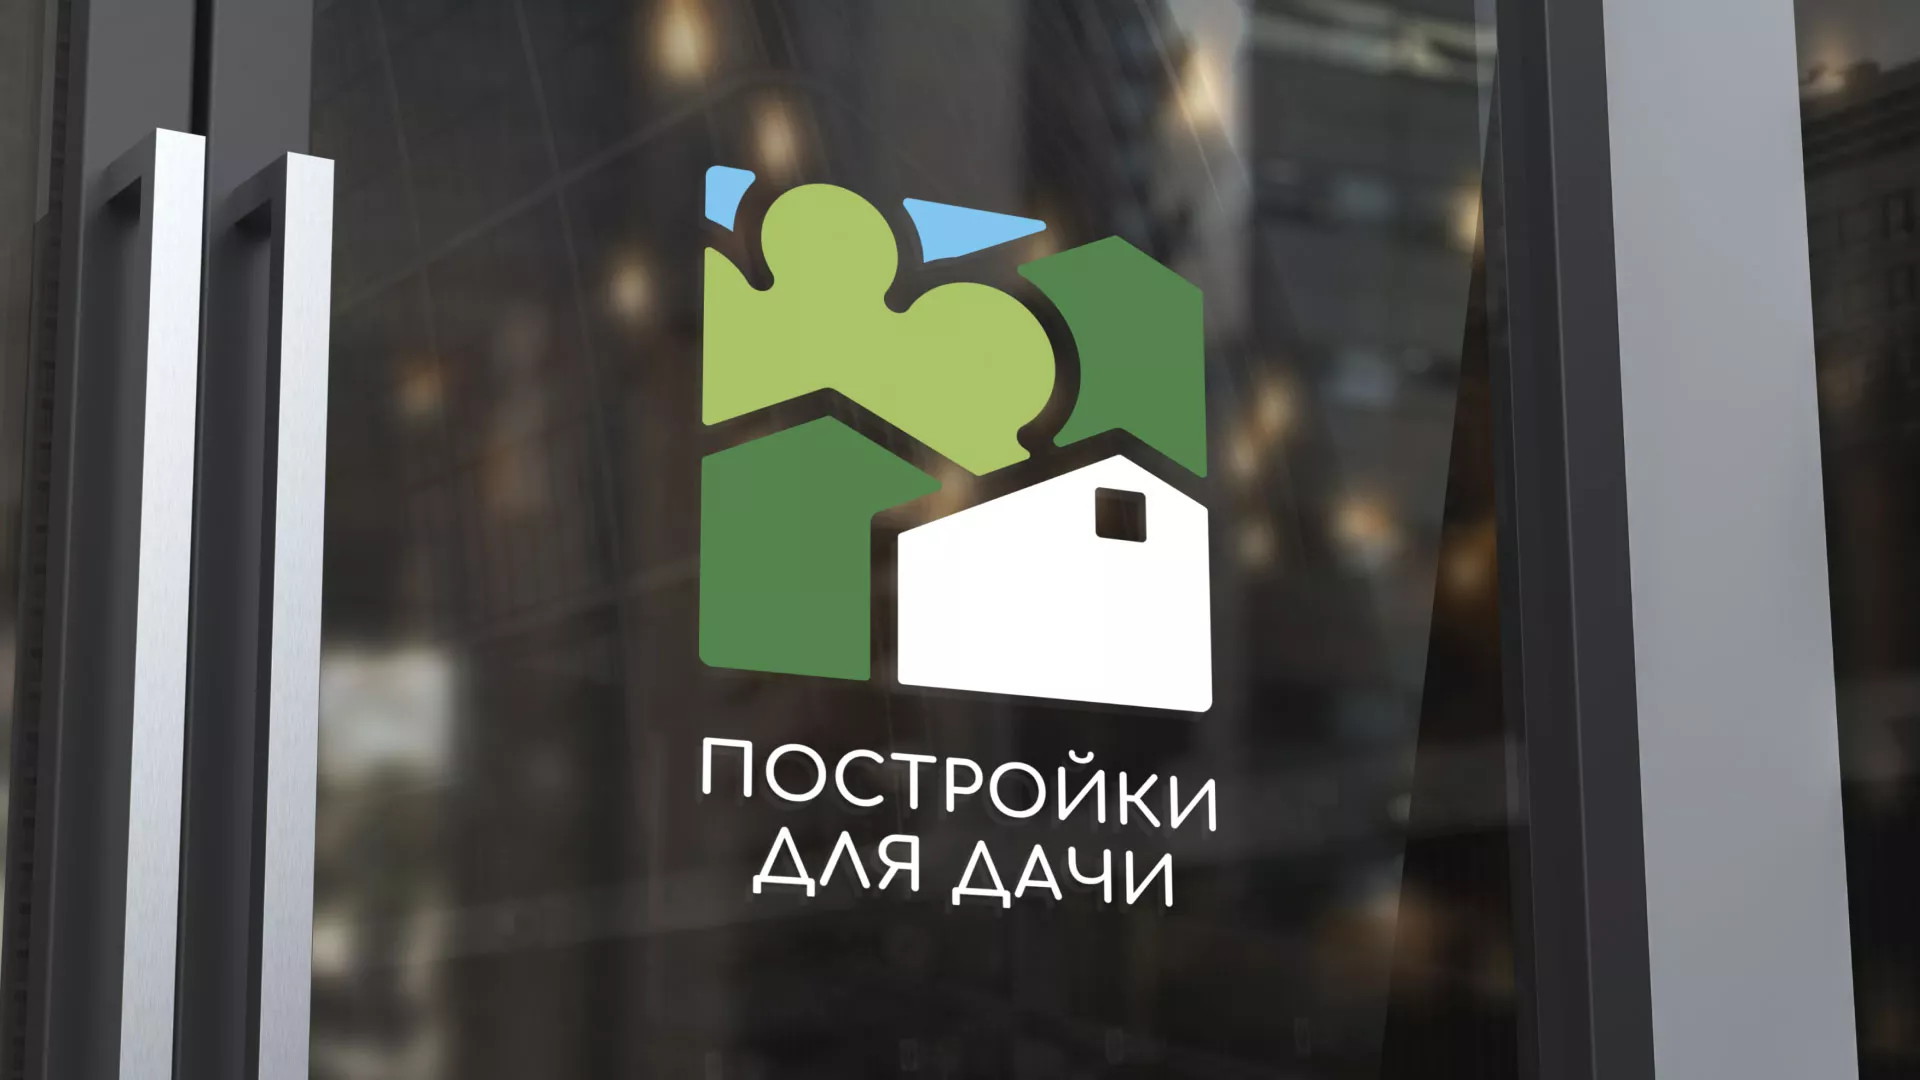 Разработка логотипа в Костомукше для компании «Постройки для дачи»